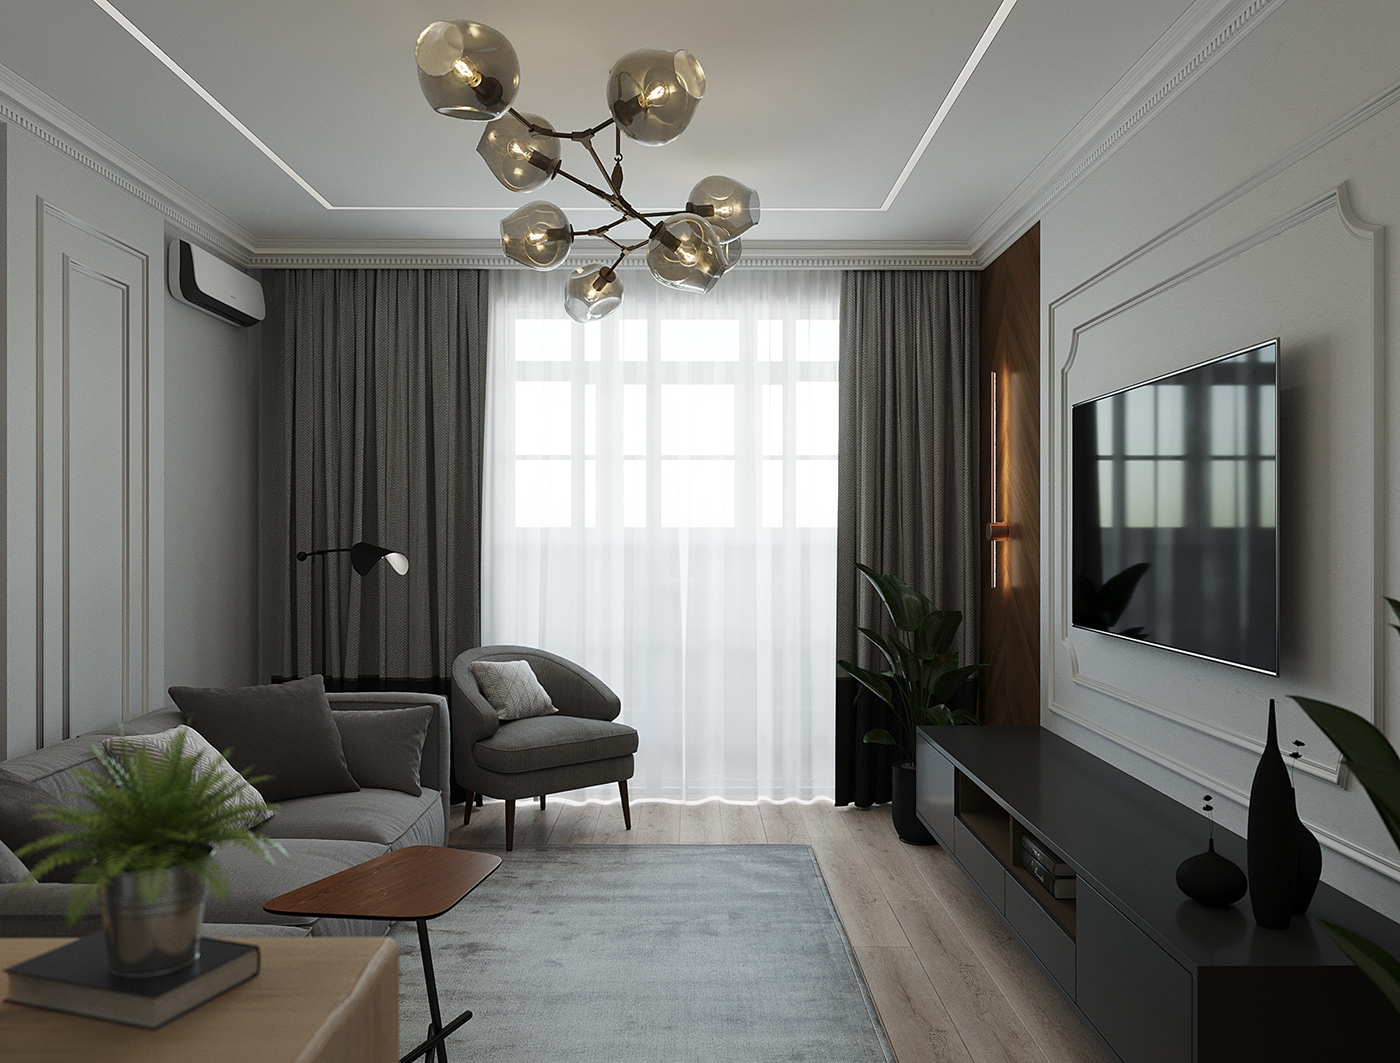 дизайн интерьера интерьер спальня кухня Визуализация интерьера Дизайн квартиры современная классика